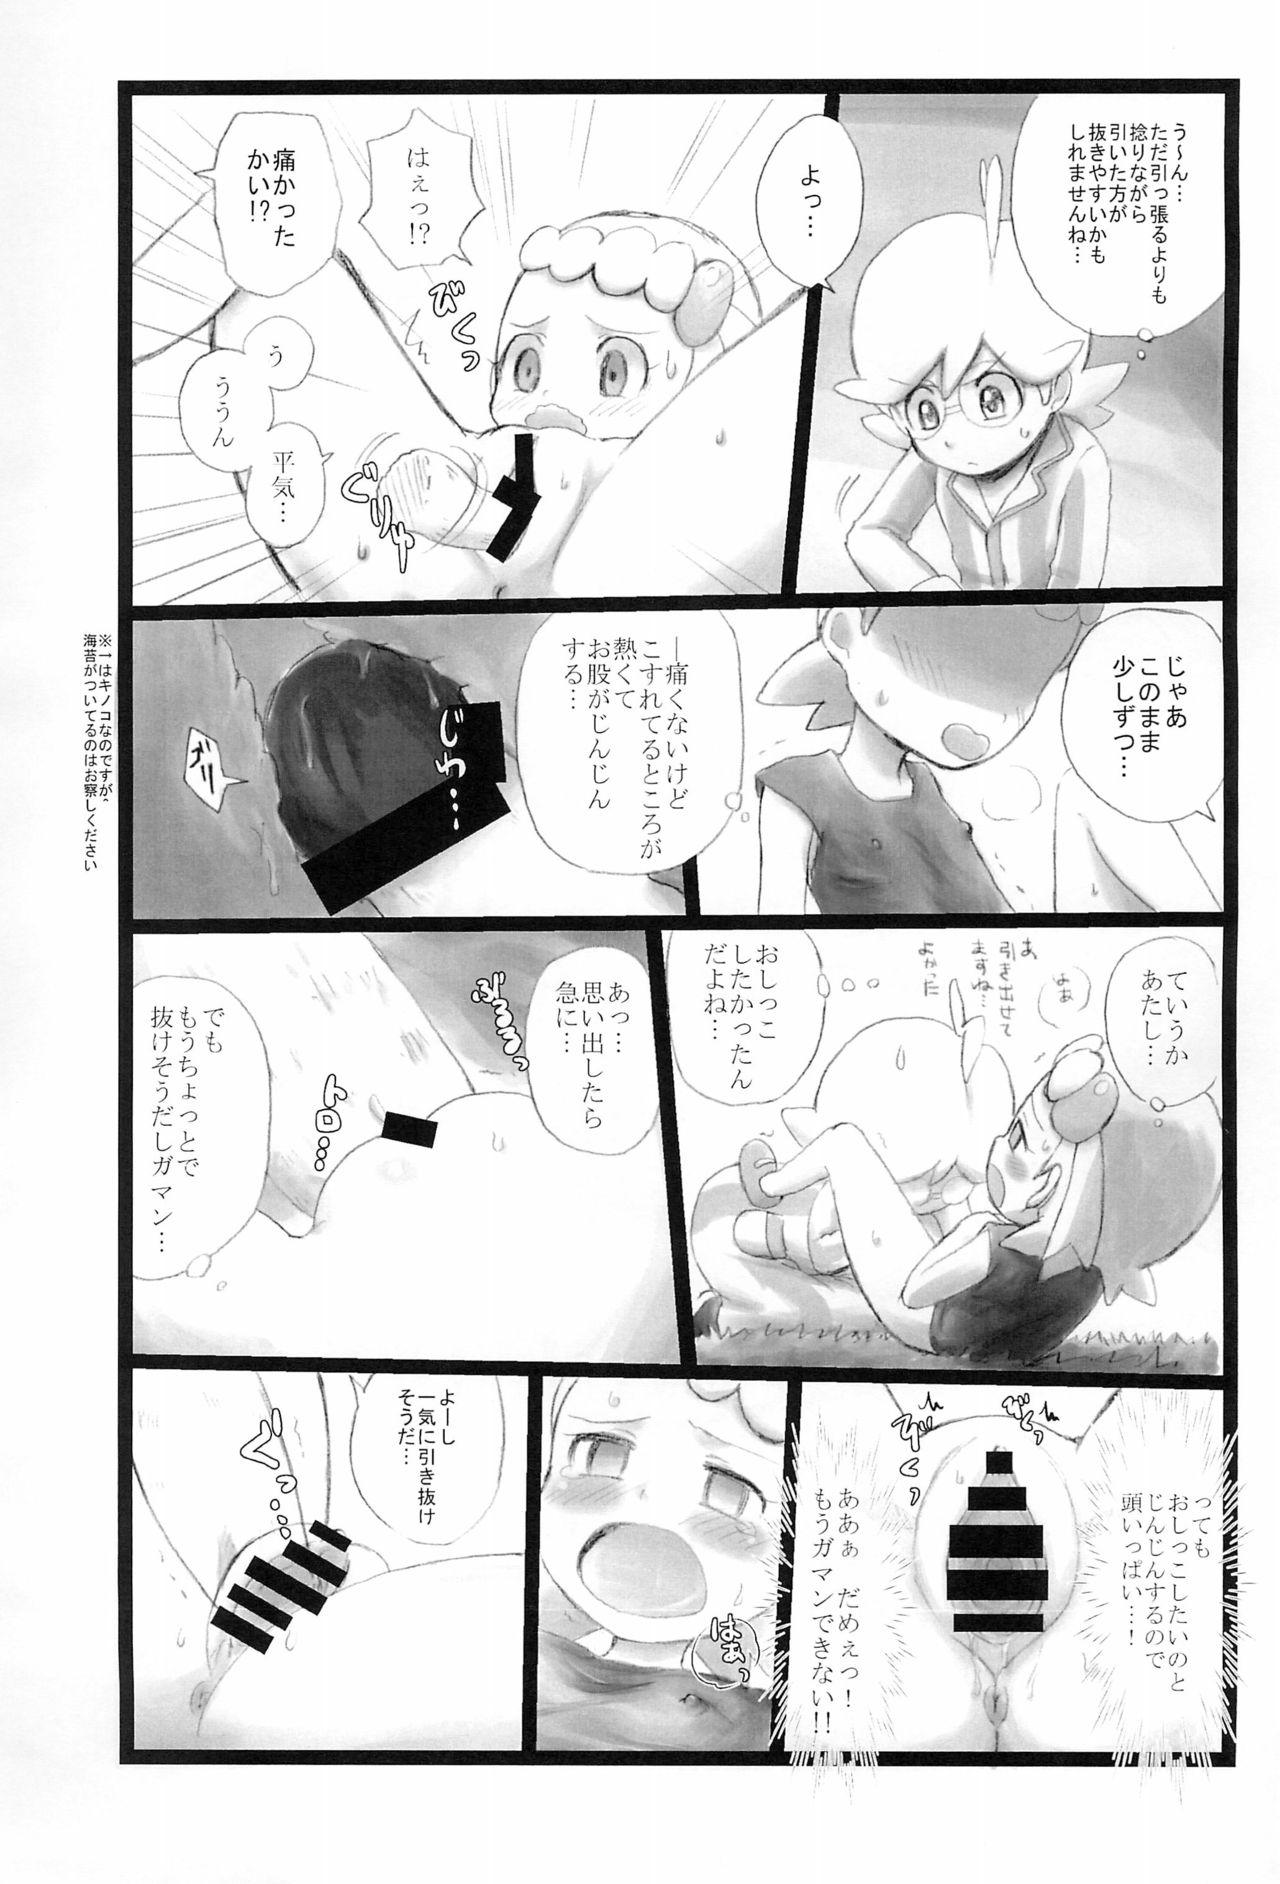 Novia Kinoko & Pearl - Pokemon Family - Page 5